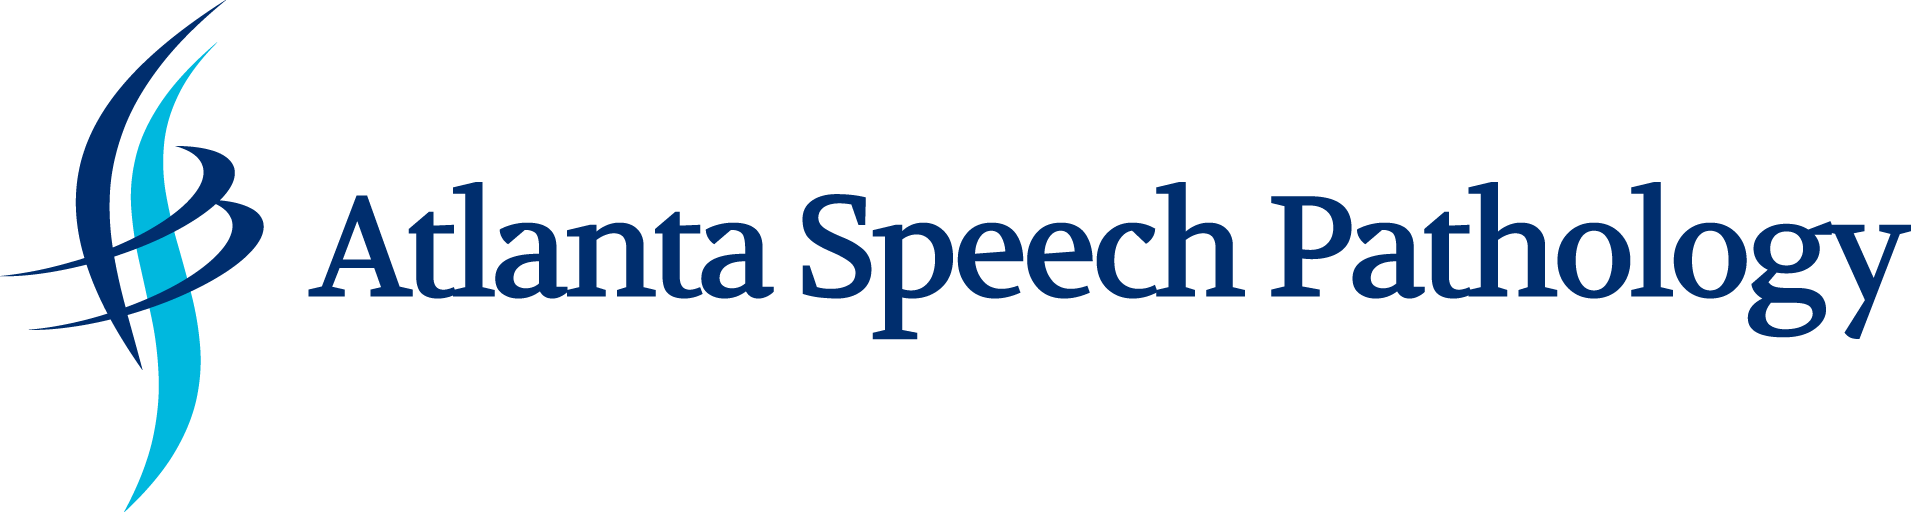 Atlanta Speech Pathology